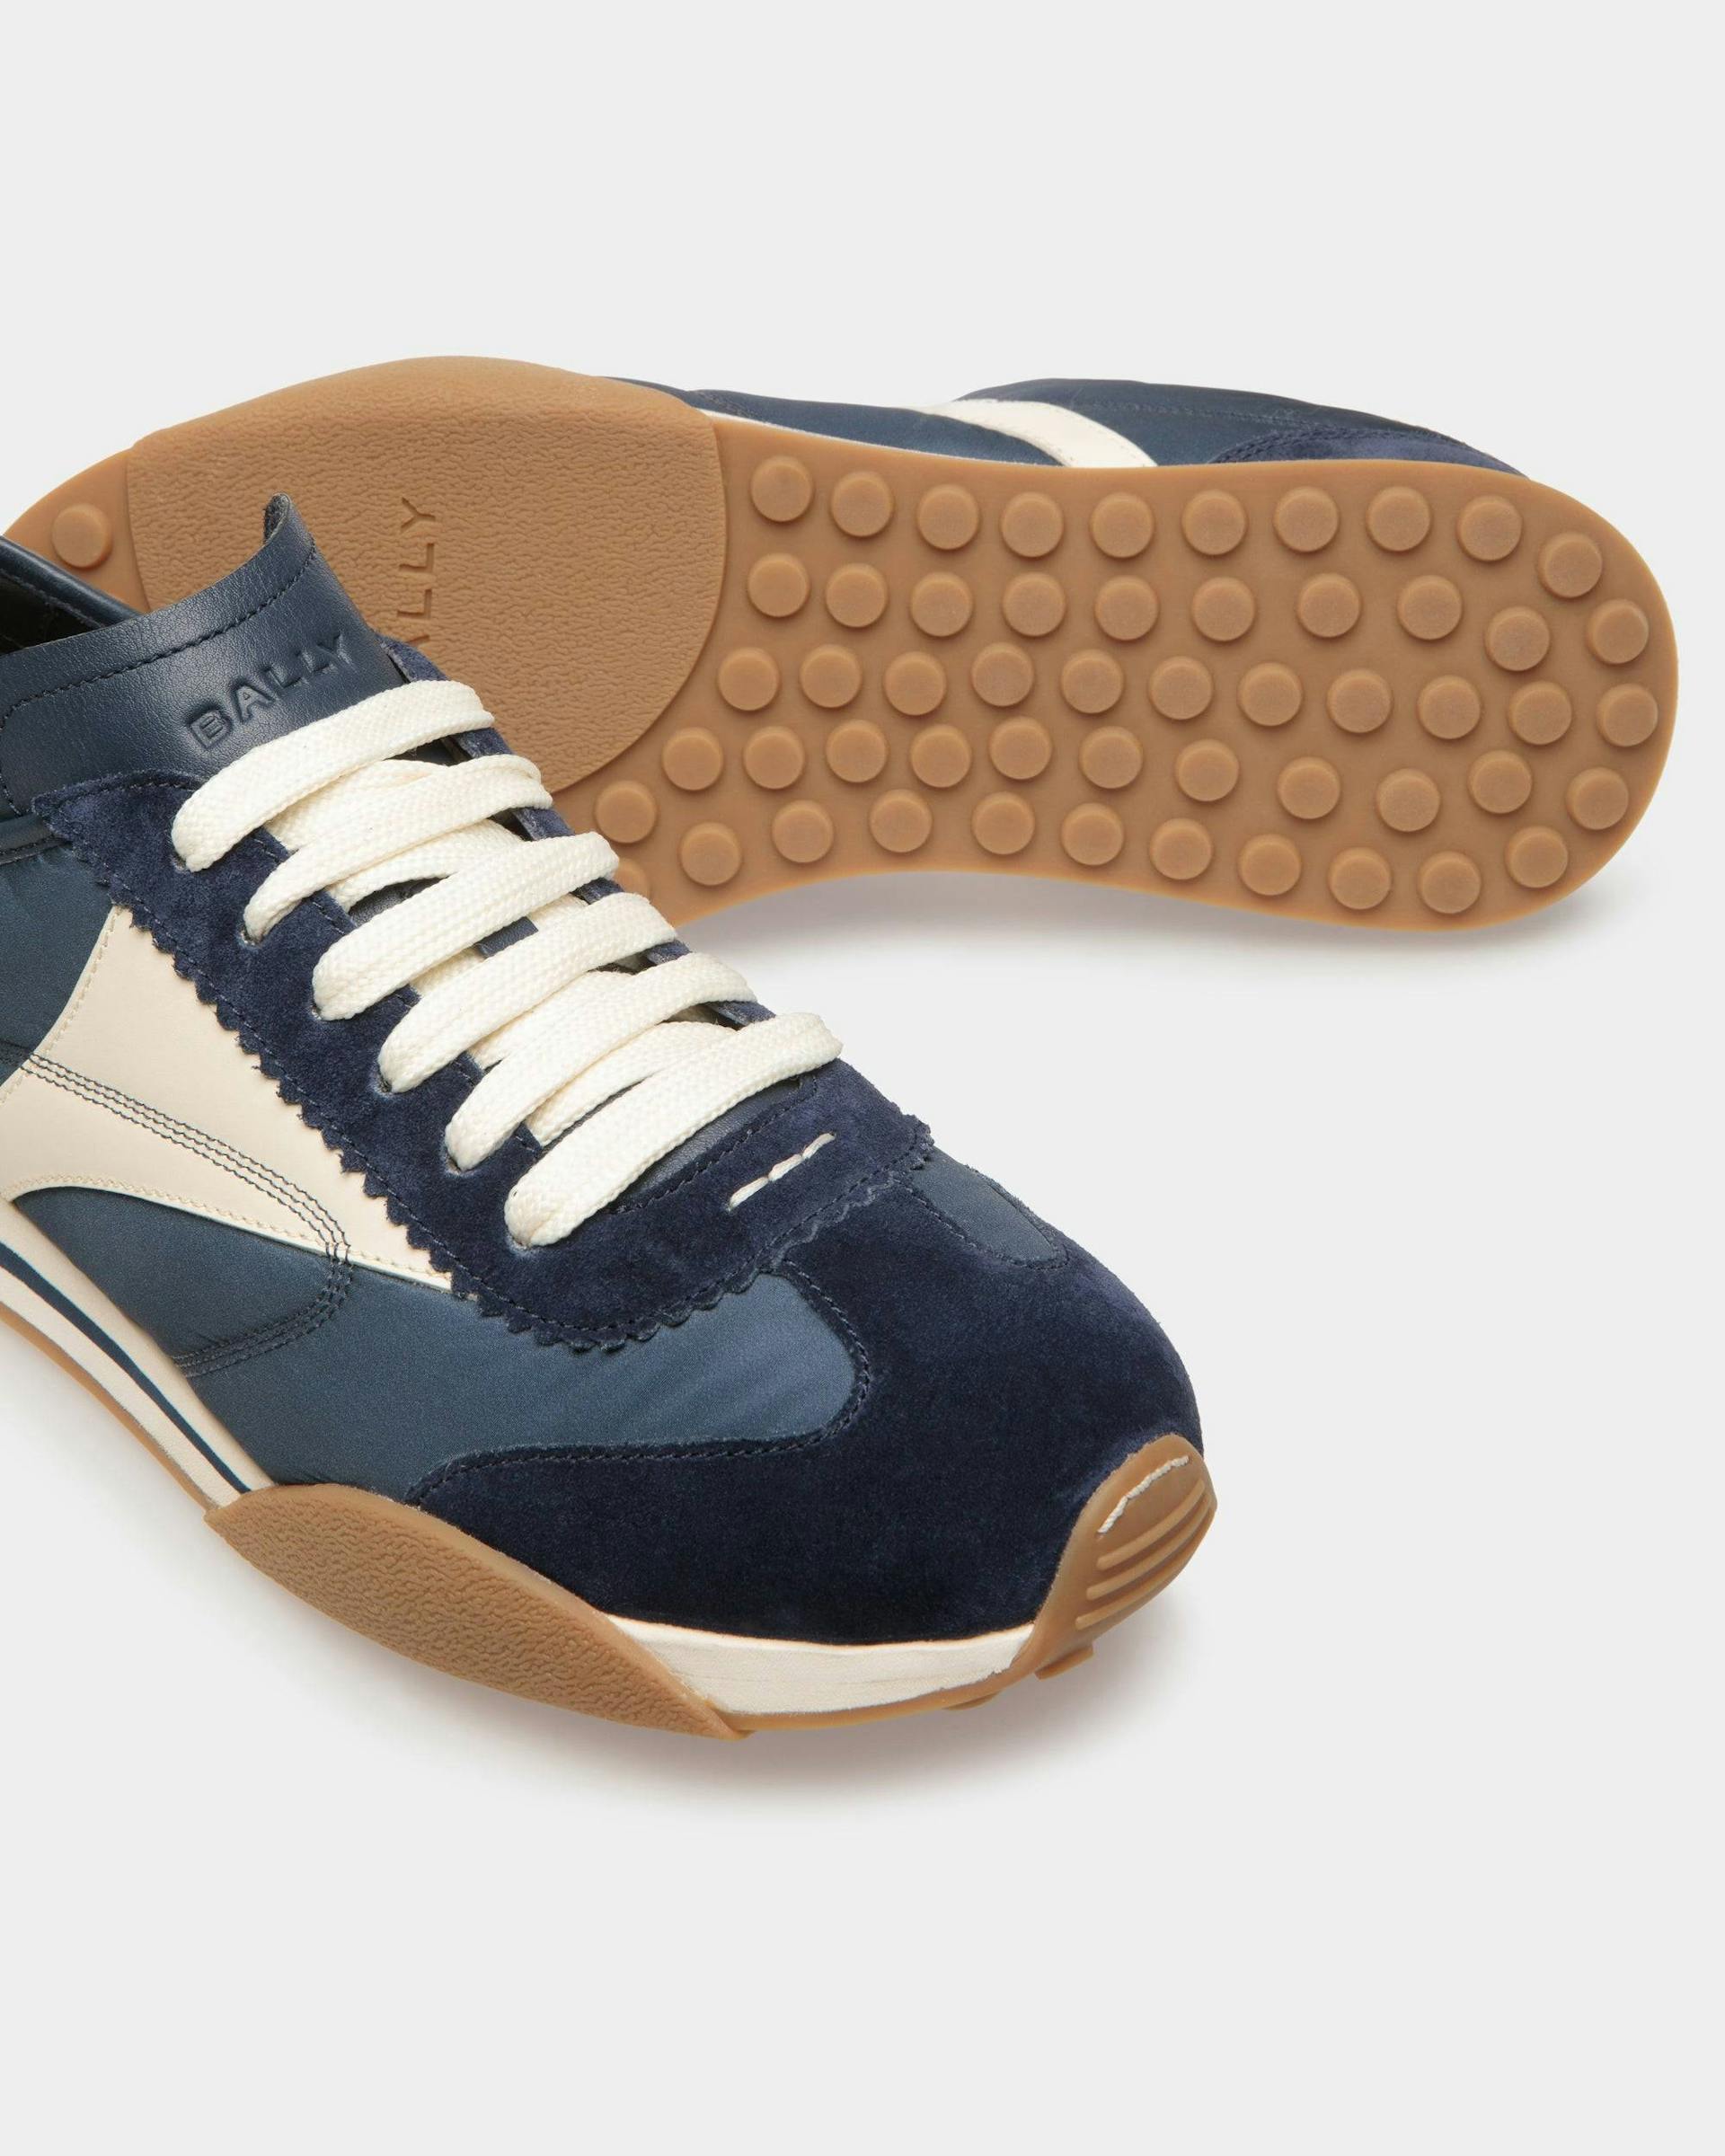 Sneakers Sussex En cuir et tissu bleu marine et ivoire - Homme - Bally - 04